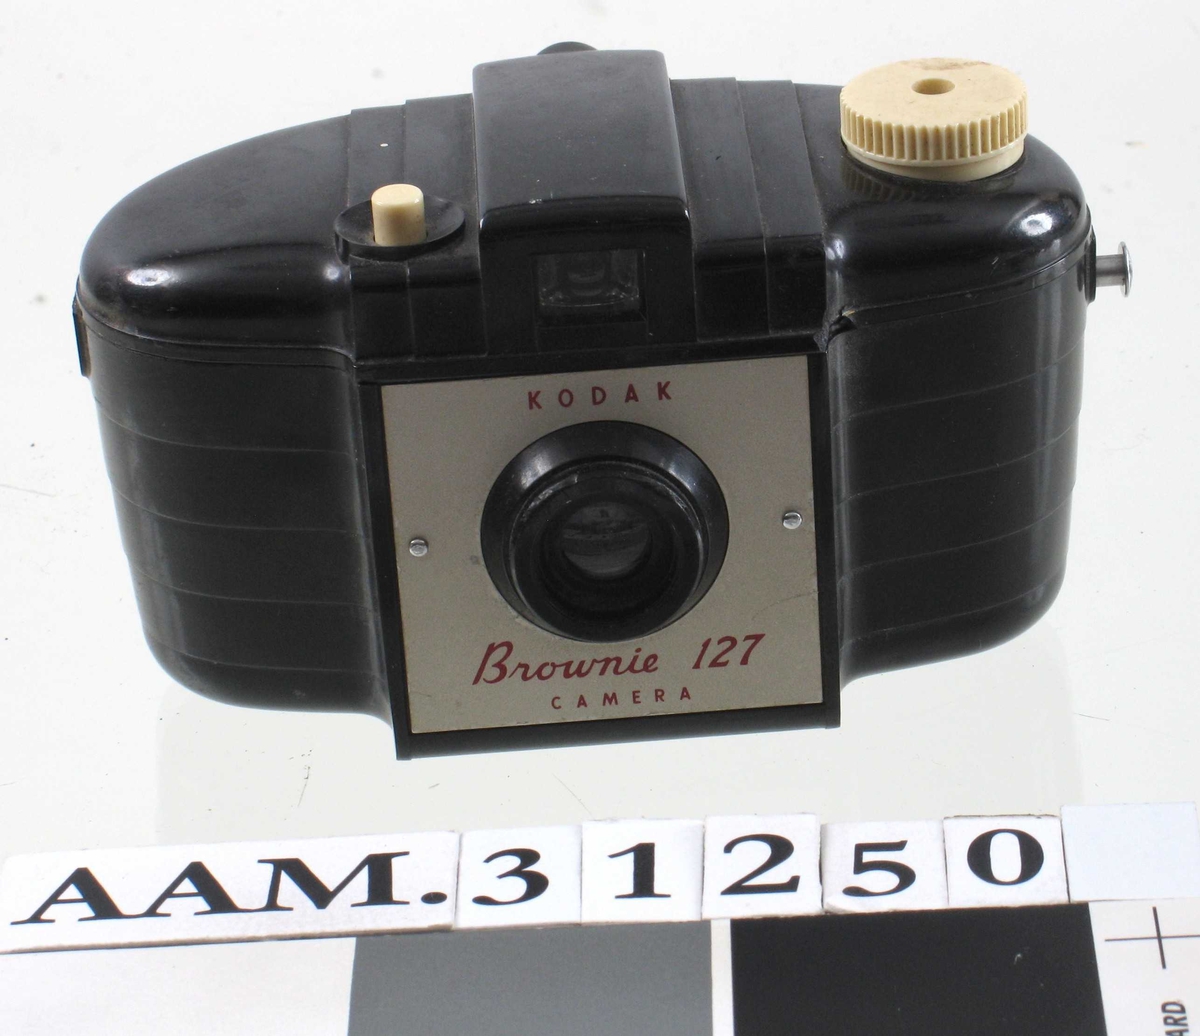 Fotoapparat, Kodak Brownie 127